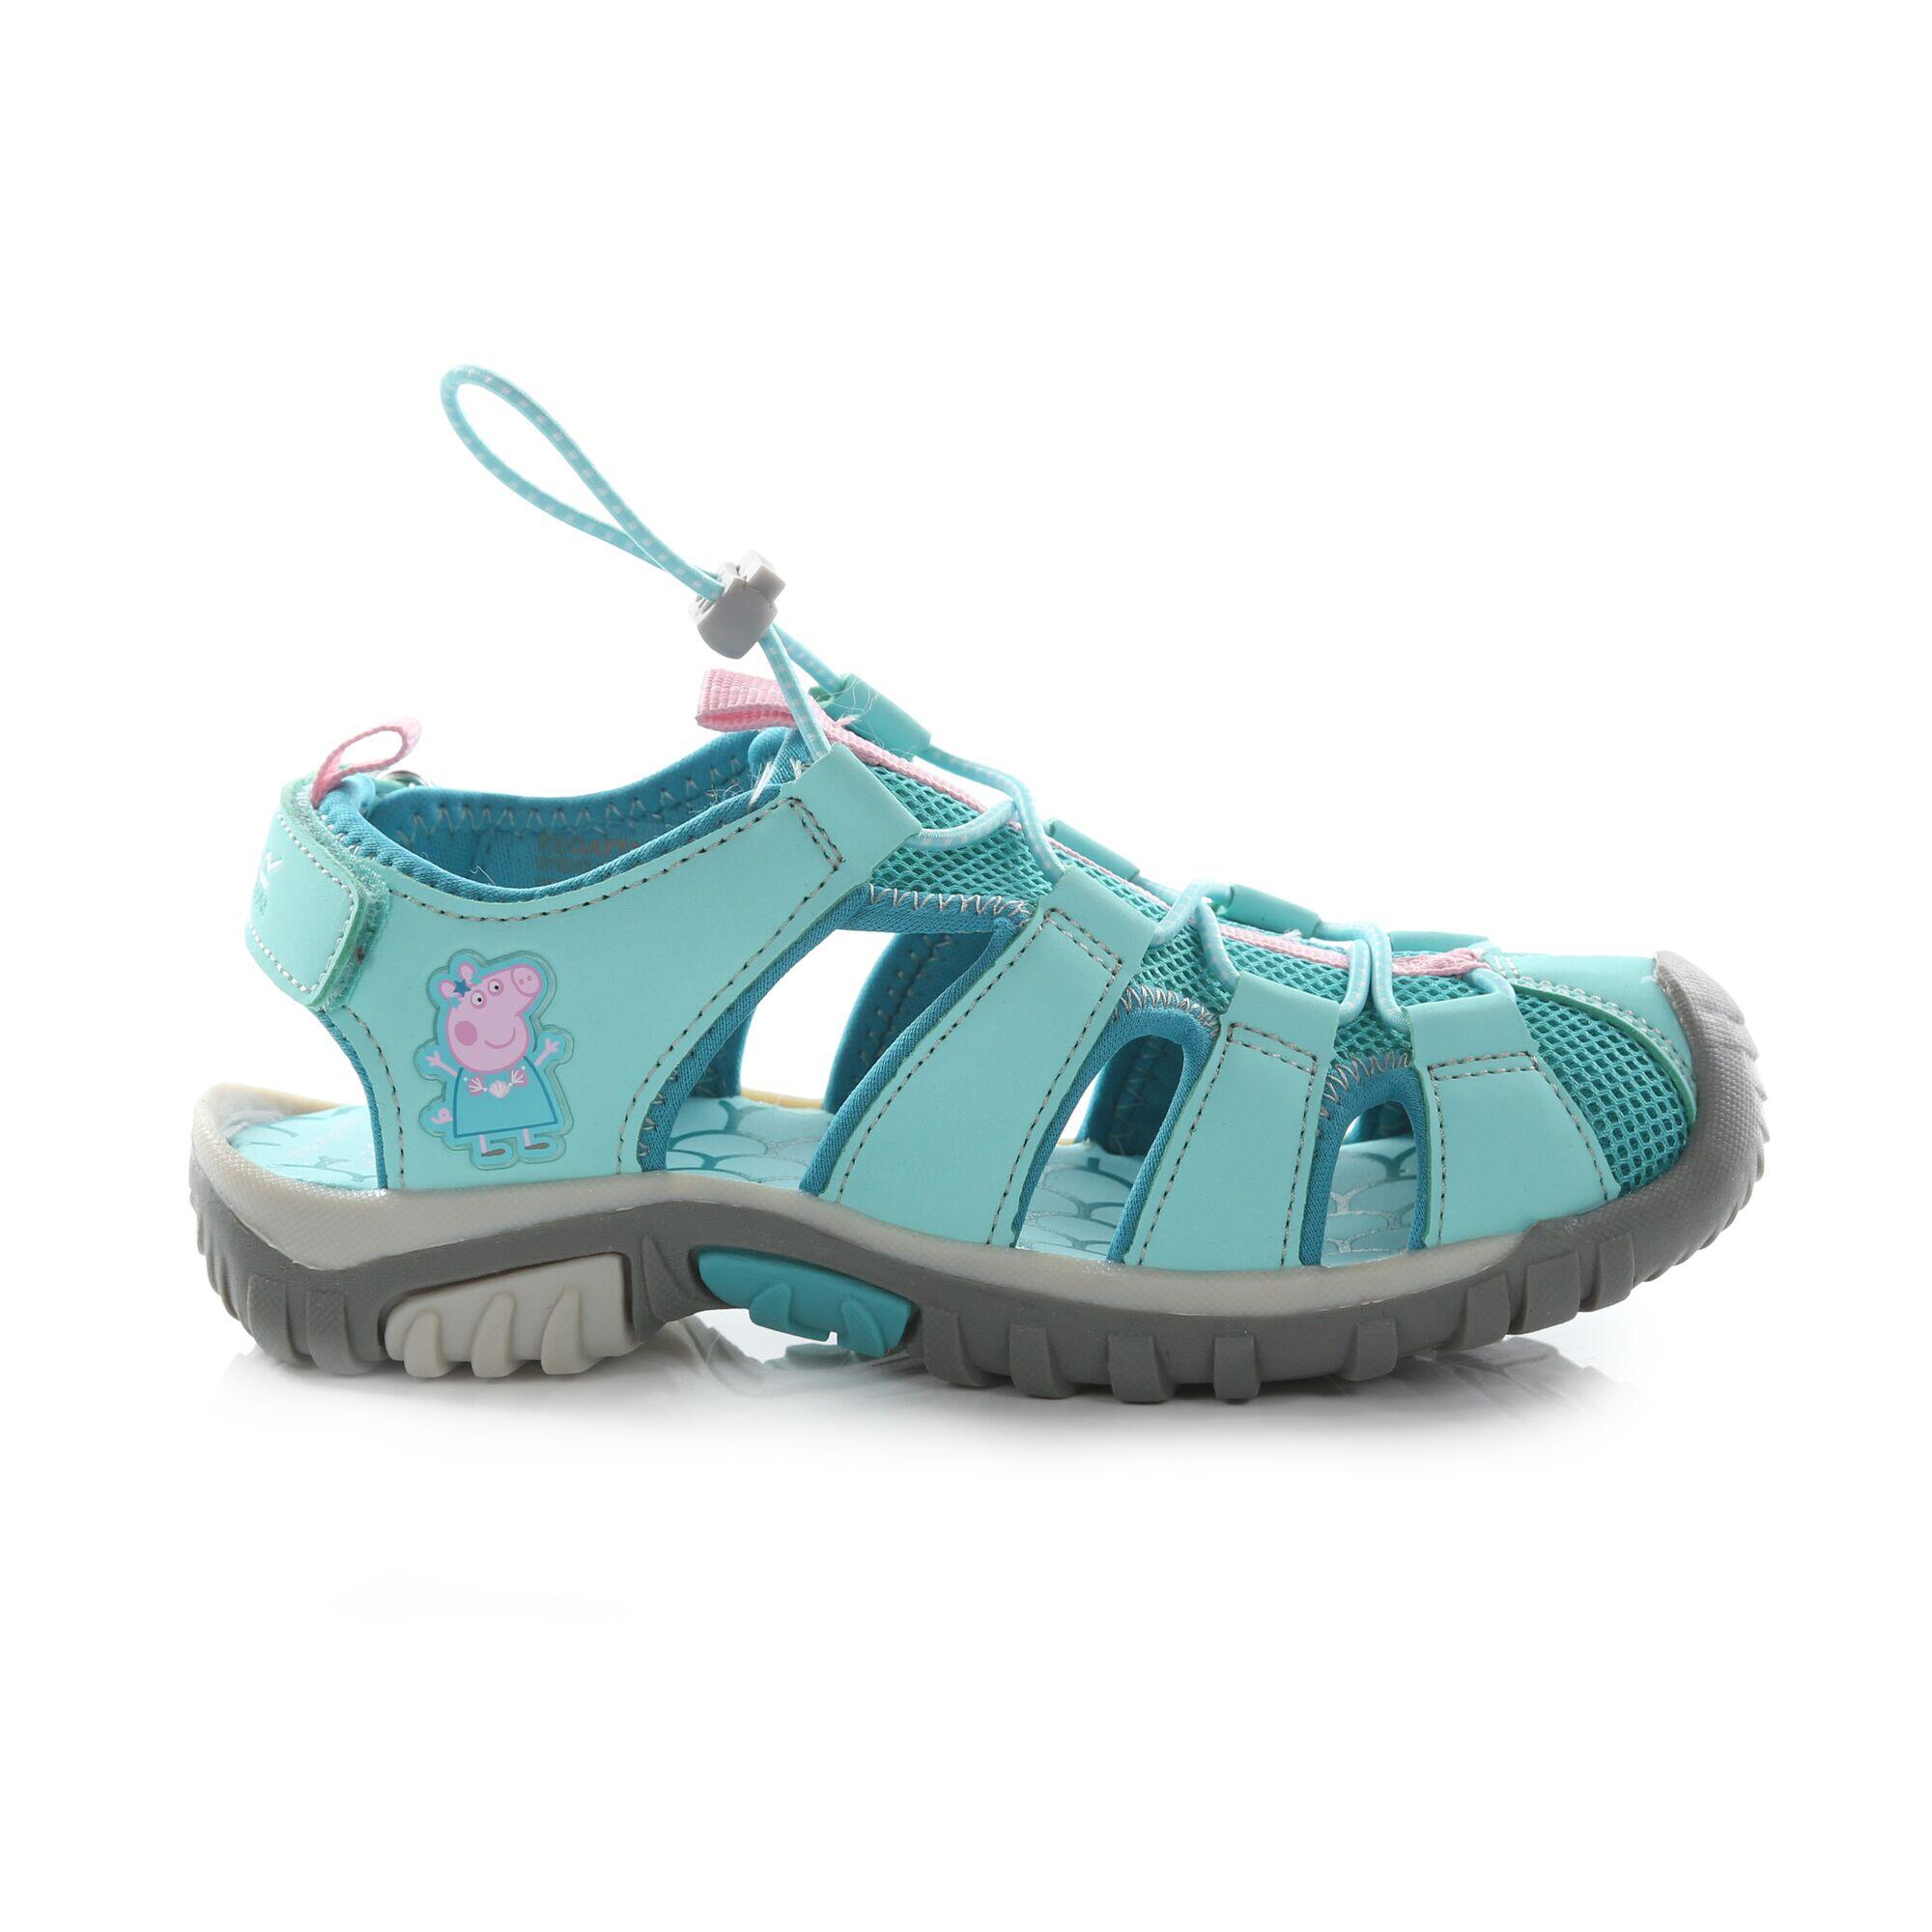 REGATTA Peppa Pig Kids Walking Sandals - Aruba Blue